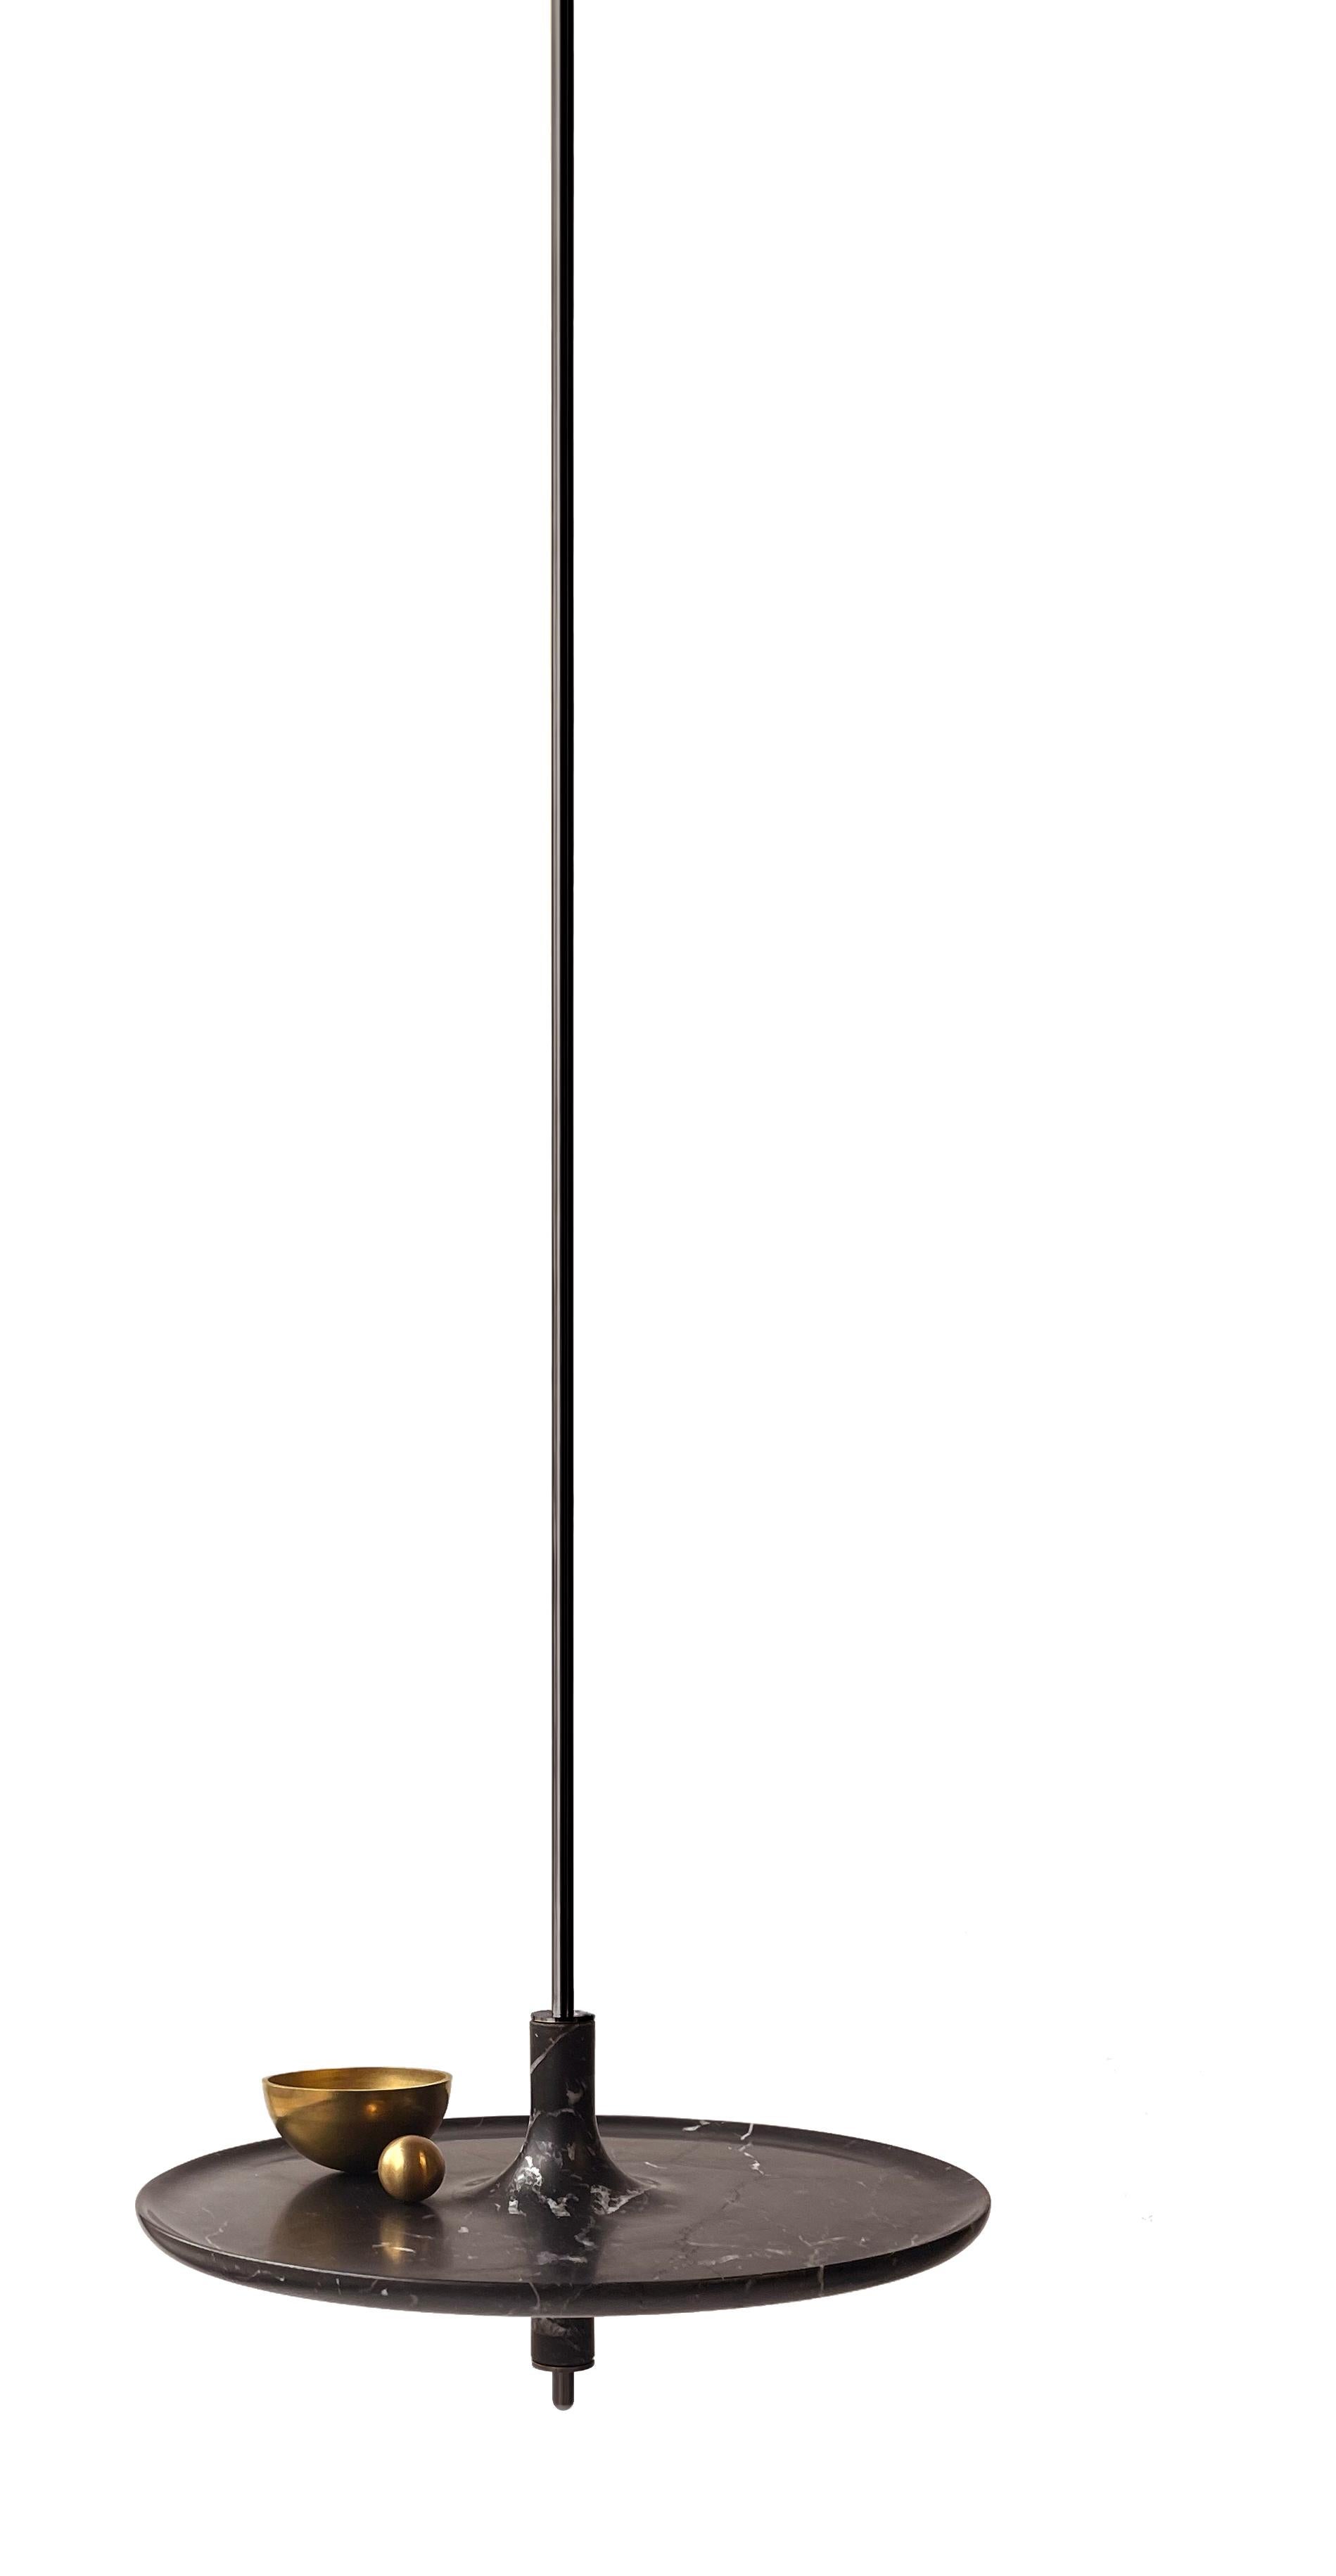 Hängetisch Toupy aus schwarzem Marmor und schwarzem Metall von Mademoiselle Jo
Abmessungen: Ø 44 x H 200 cm.
MATERIALIEN: Nero Marquina-Marmor und schwarzes Metall.

Erhältlich in vier Holzfarben, drei Marmorvarianten, zwei Stangenversionen und